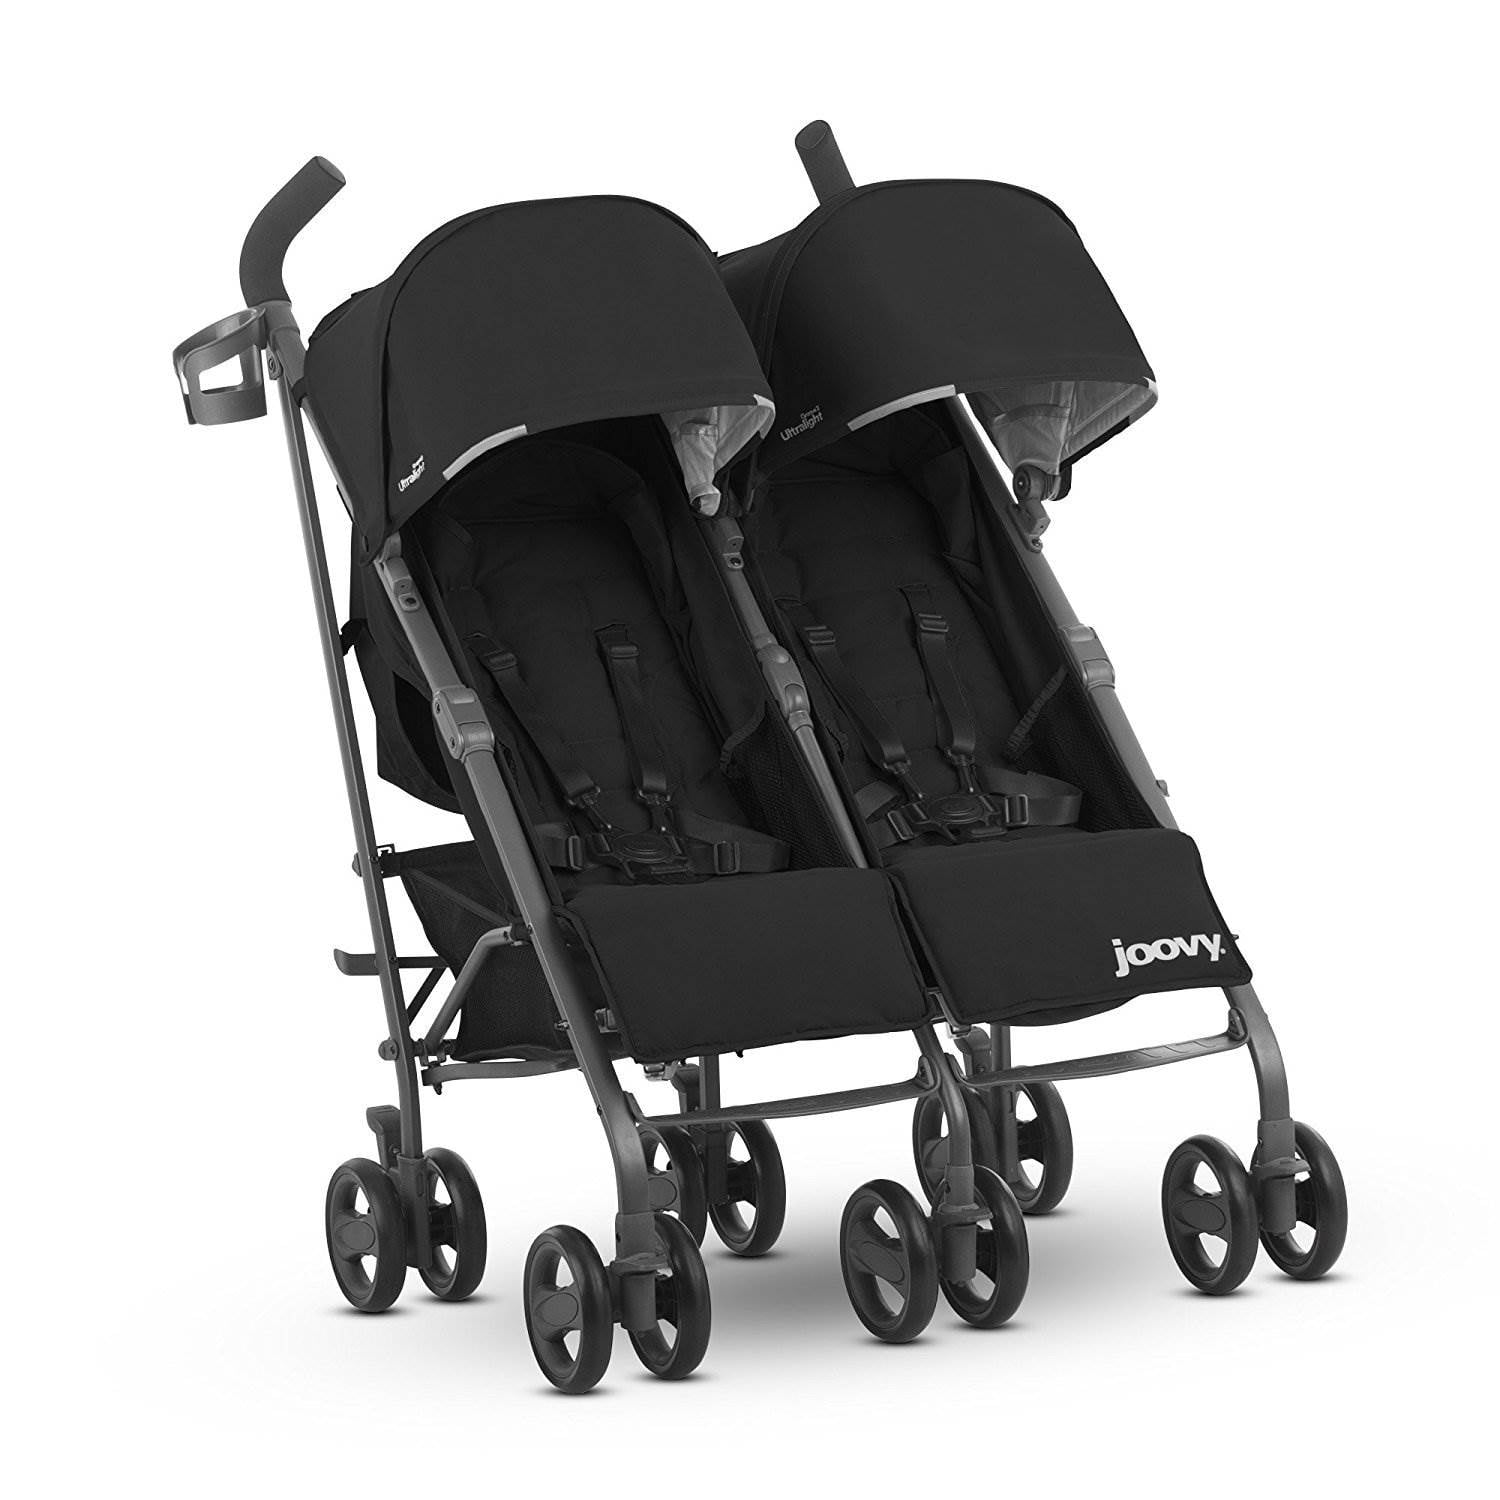 Двойная коляска для детей. Коляска для двойни Maclaren Twin. EASYGO Duo Comfort коляска трость. Двойная коляска Joovy. Ray коляска для двойни Ultralight.